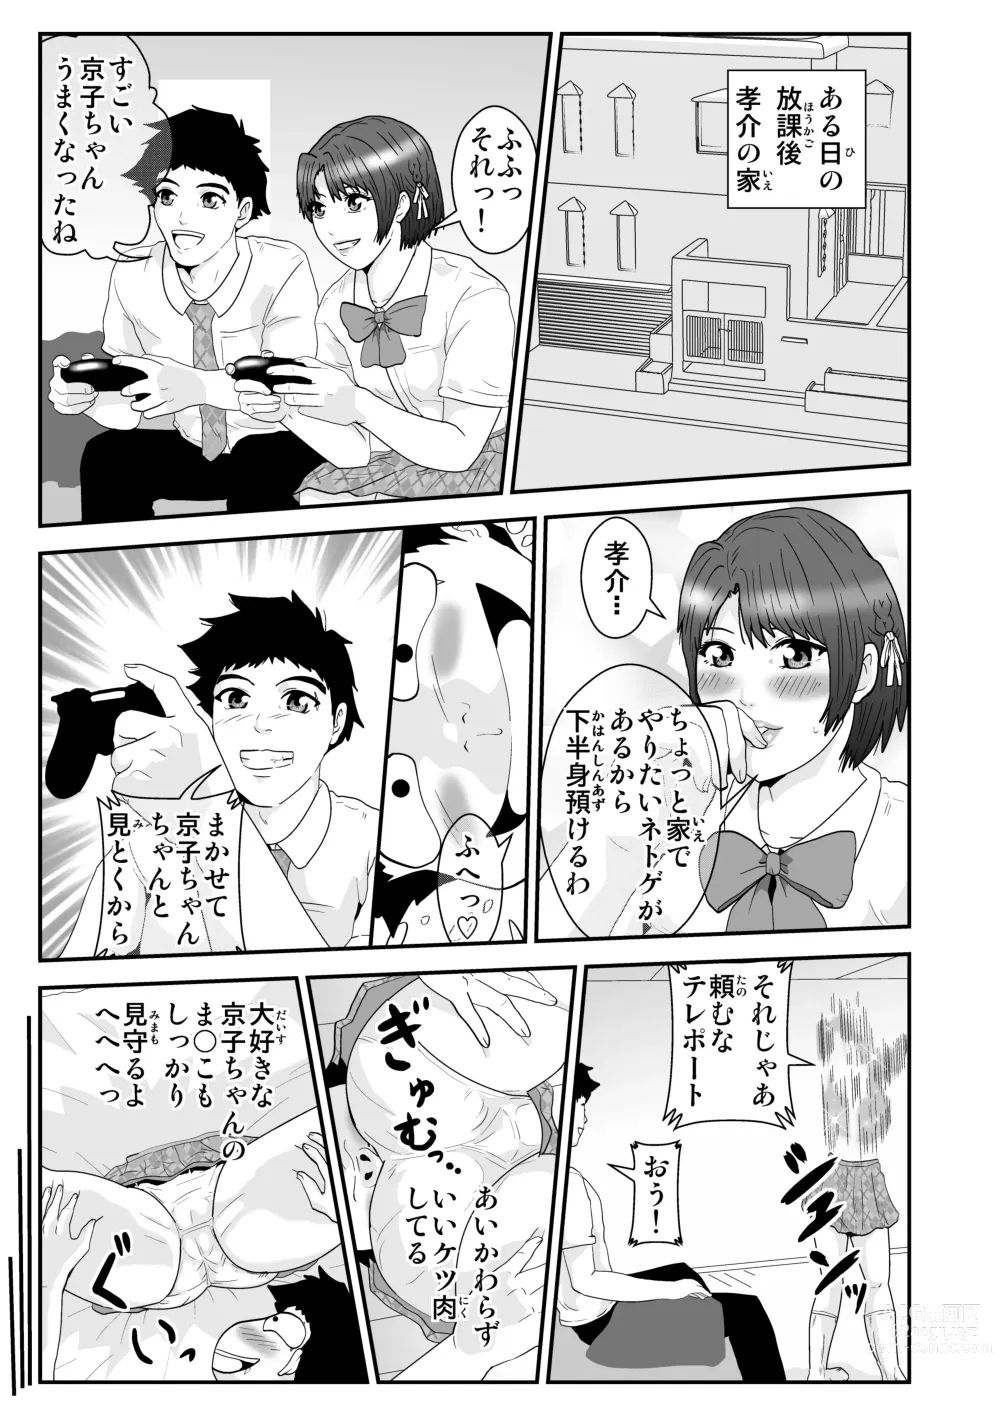 Page 7 of doujinshi Esper Kyoko